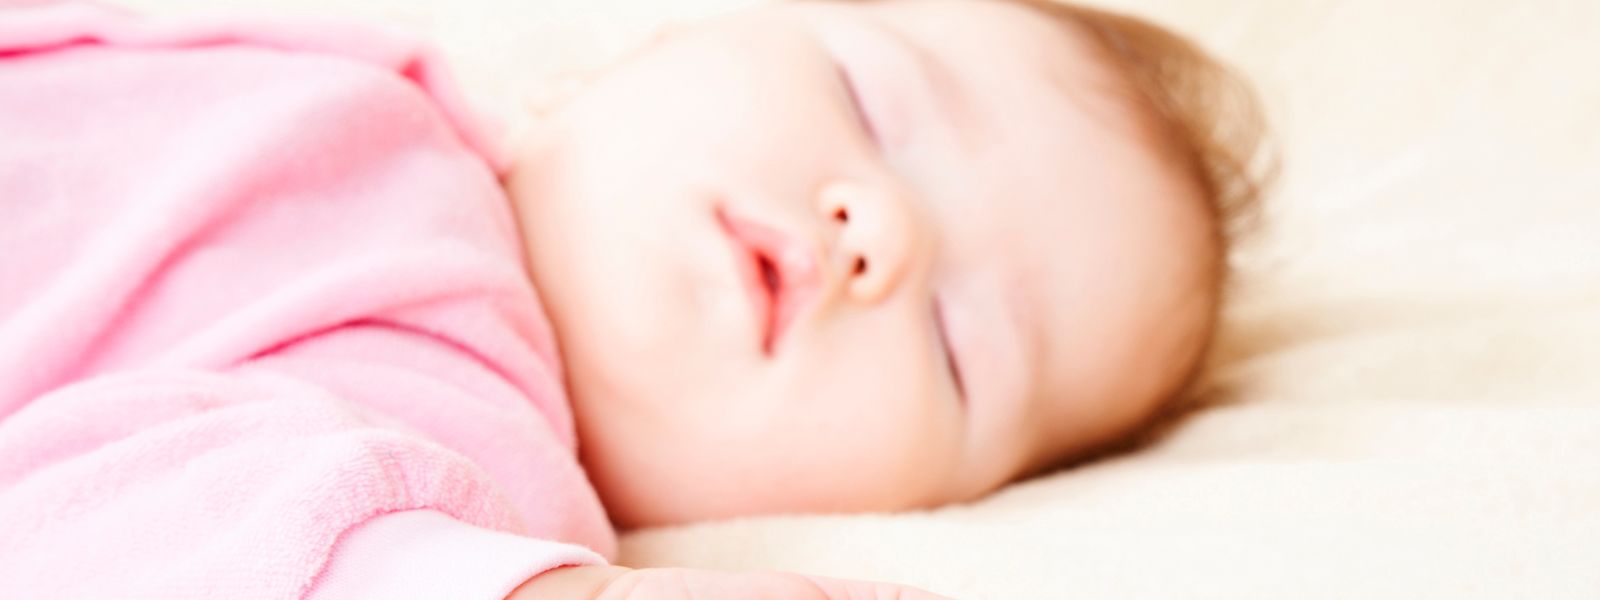 SIDS, der plötzliche Kindstod im Schlaf, ist eine der häufigsten Todesursachen bei Kindern bis zu einem Jahr. 